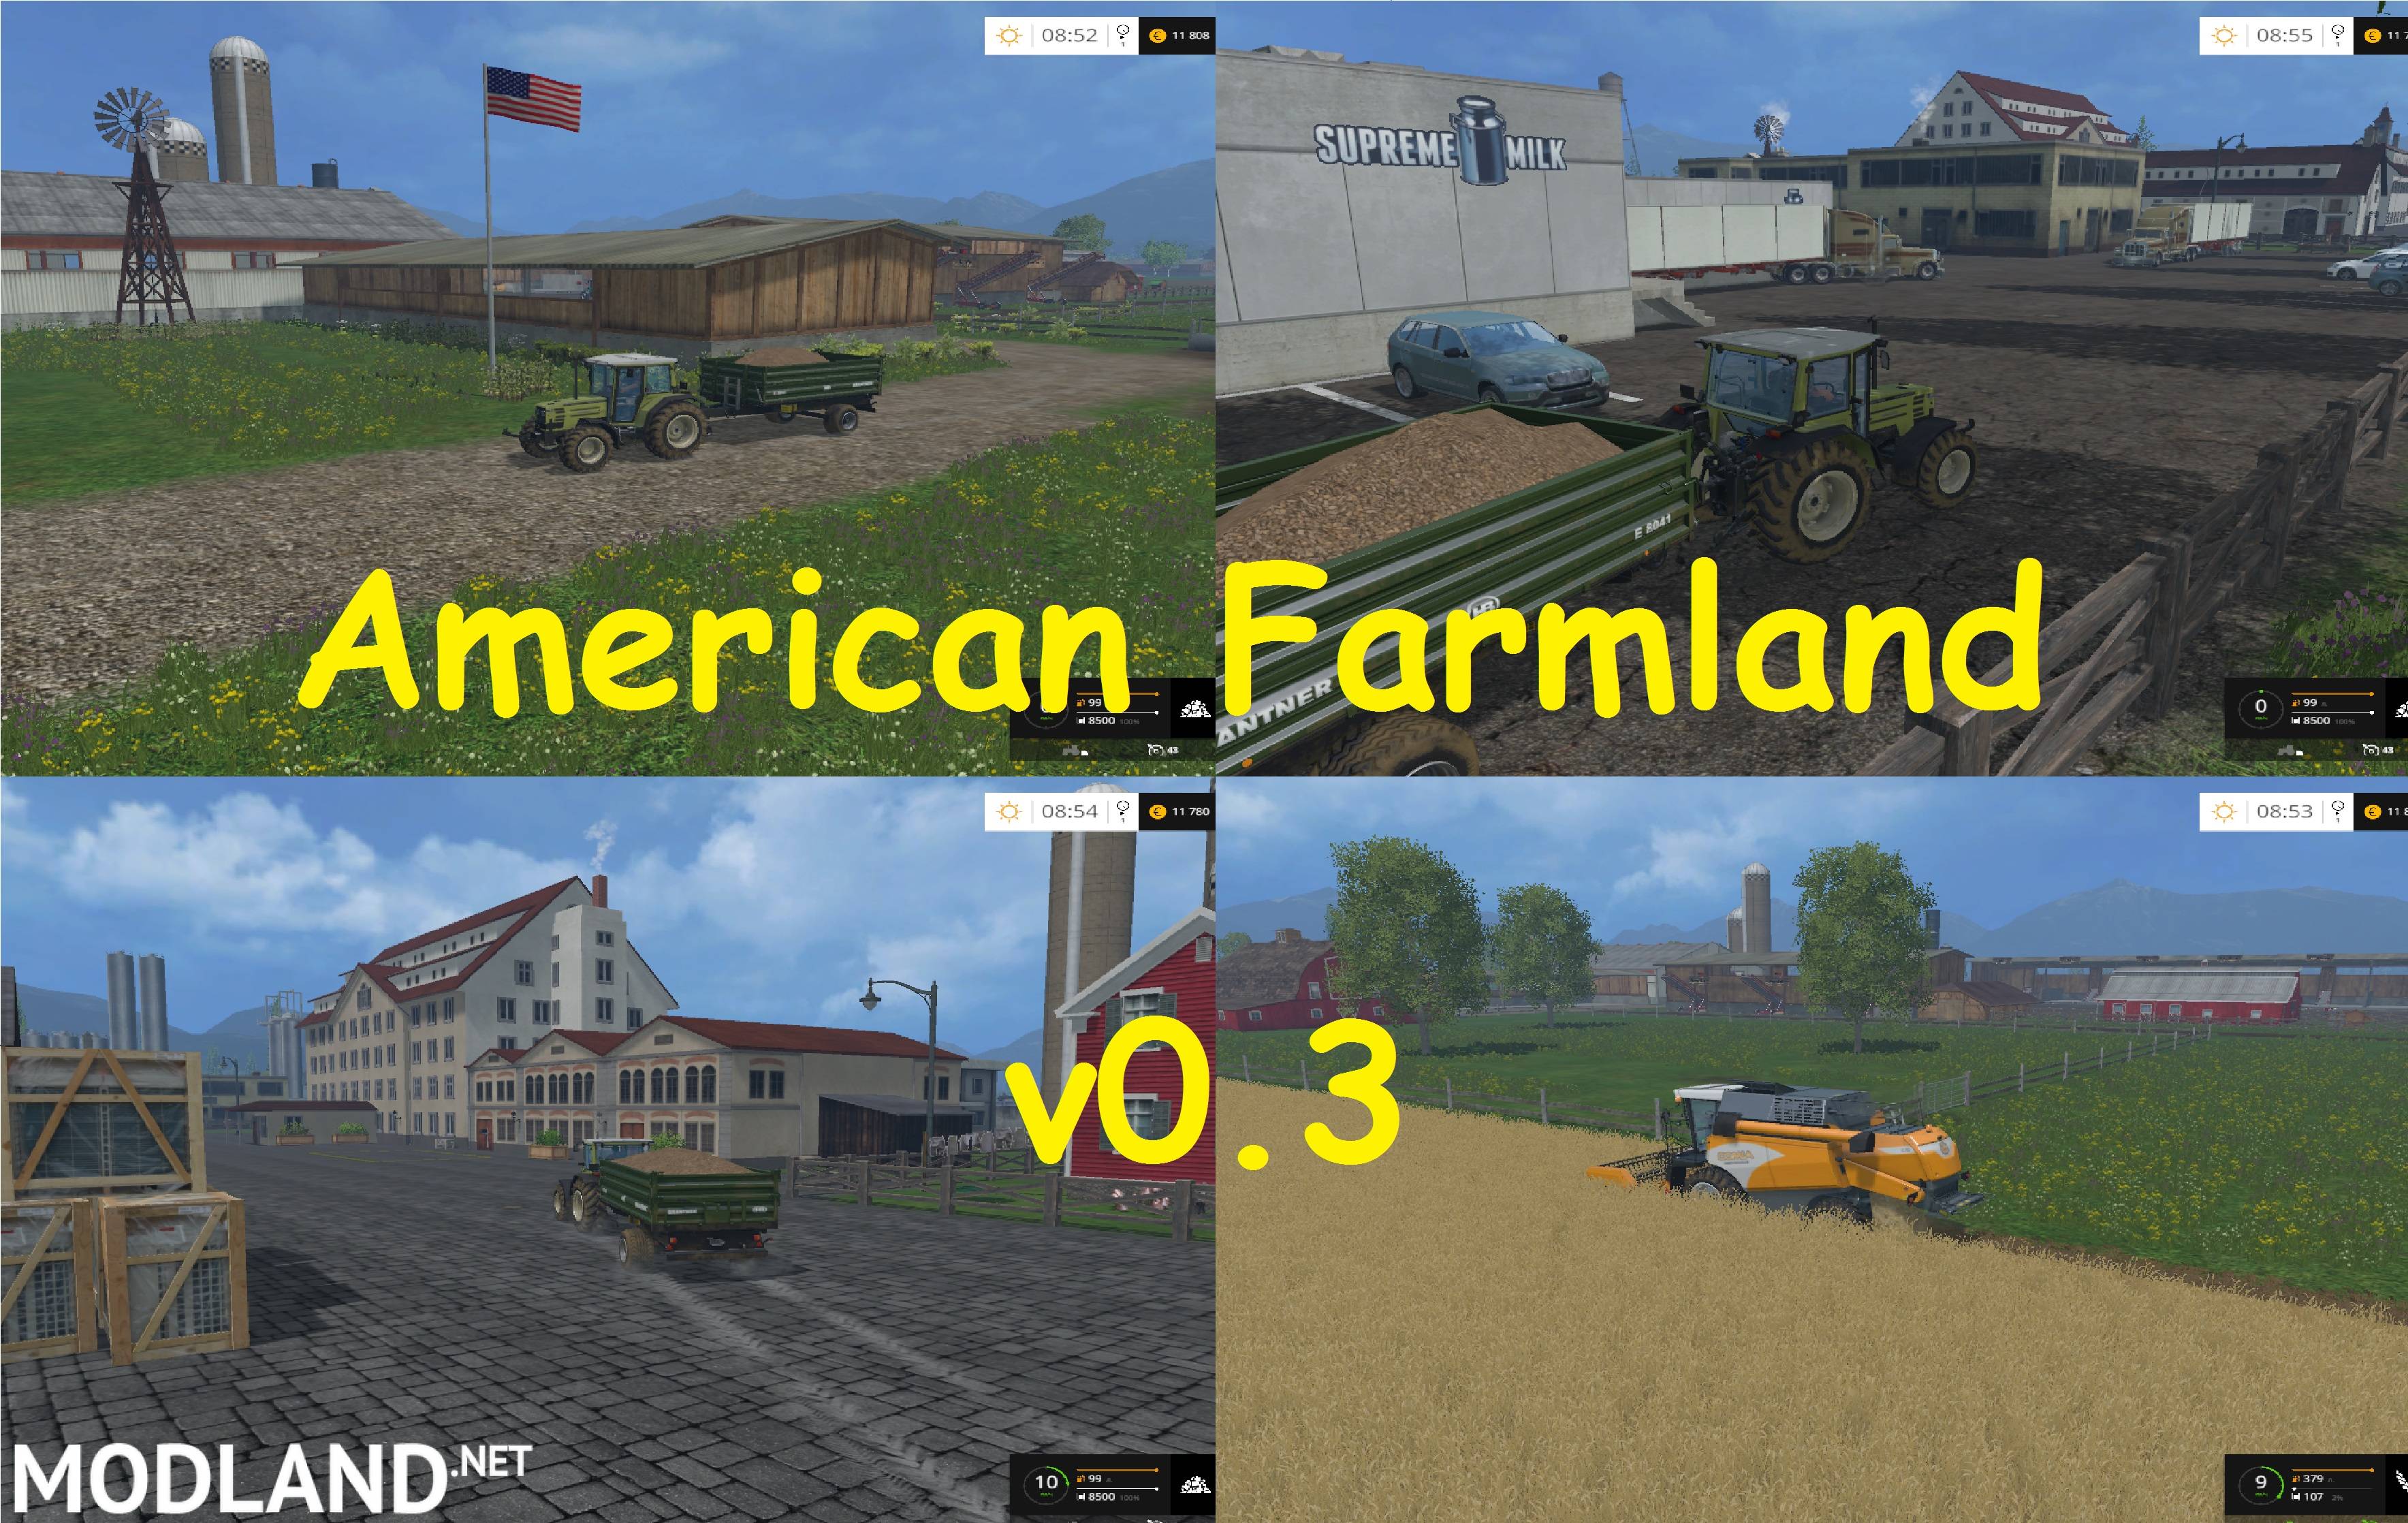 American Farmland v 0.3 mod for Farming Simulator 2015 / 15  FS, LS 